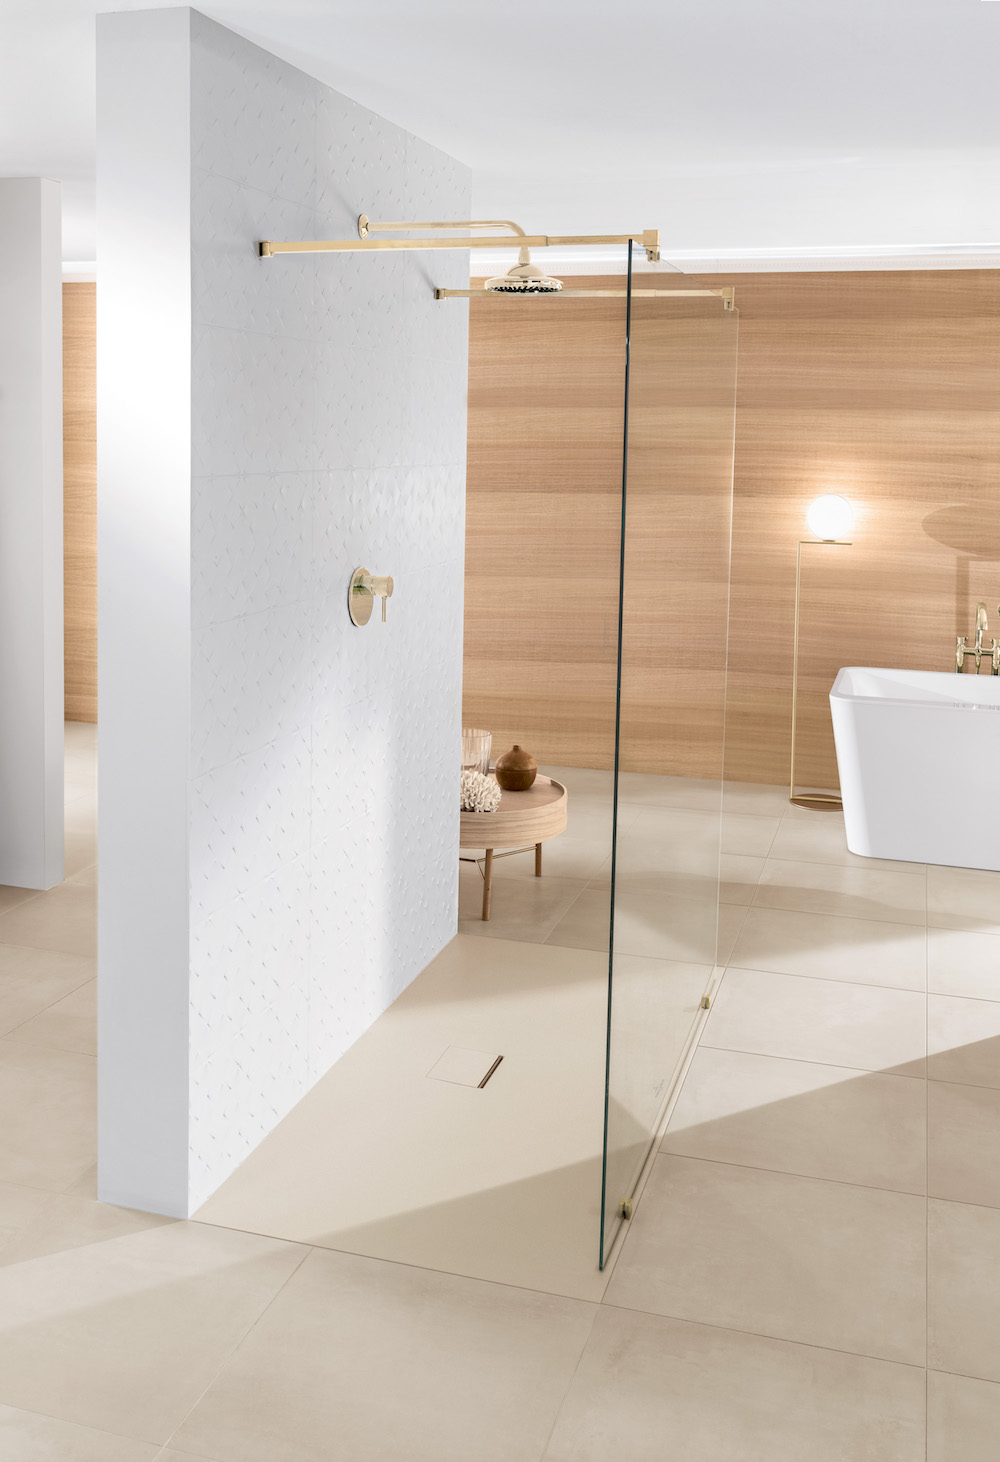 Inloopdouche met douchevloer Squaro Infinity van Villeroy & Boch. Door materiaal Quaryl kan deze douchevloer zich aan vrijwel elke ruimtelijke situatie aanpassen. #badkamer #douche